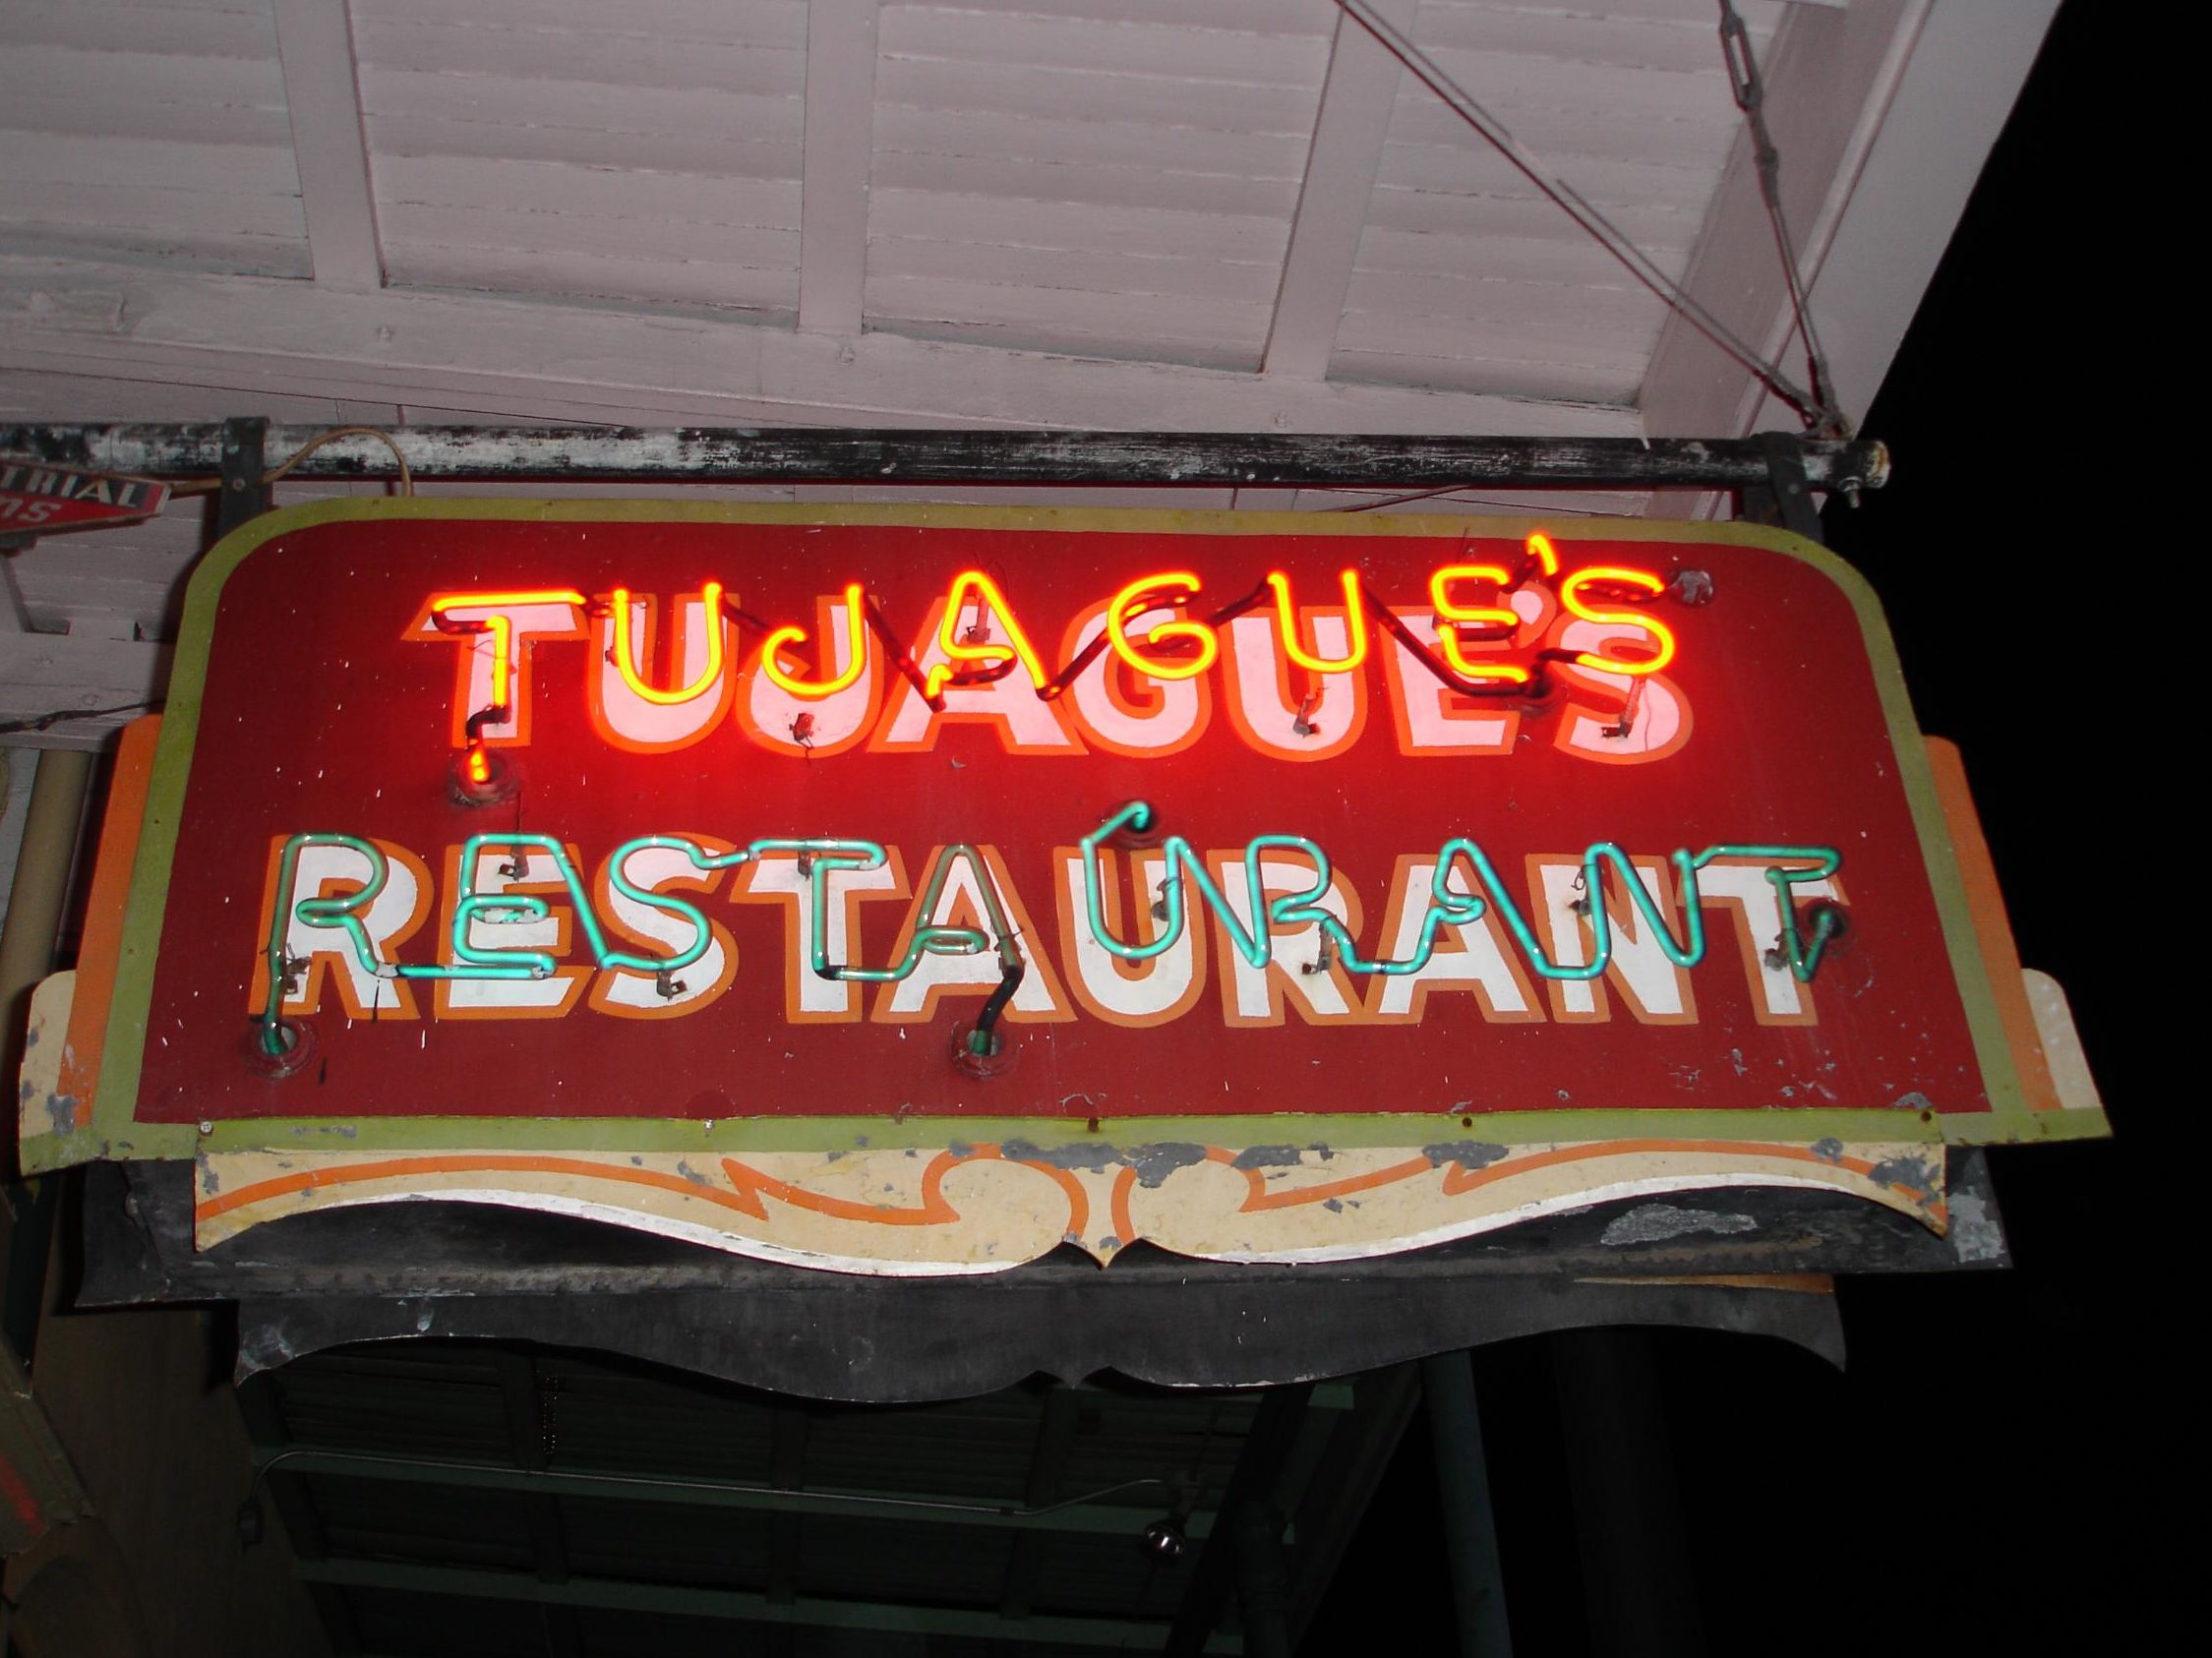 Tujague's - Sign